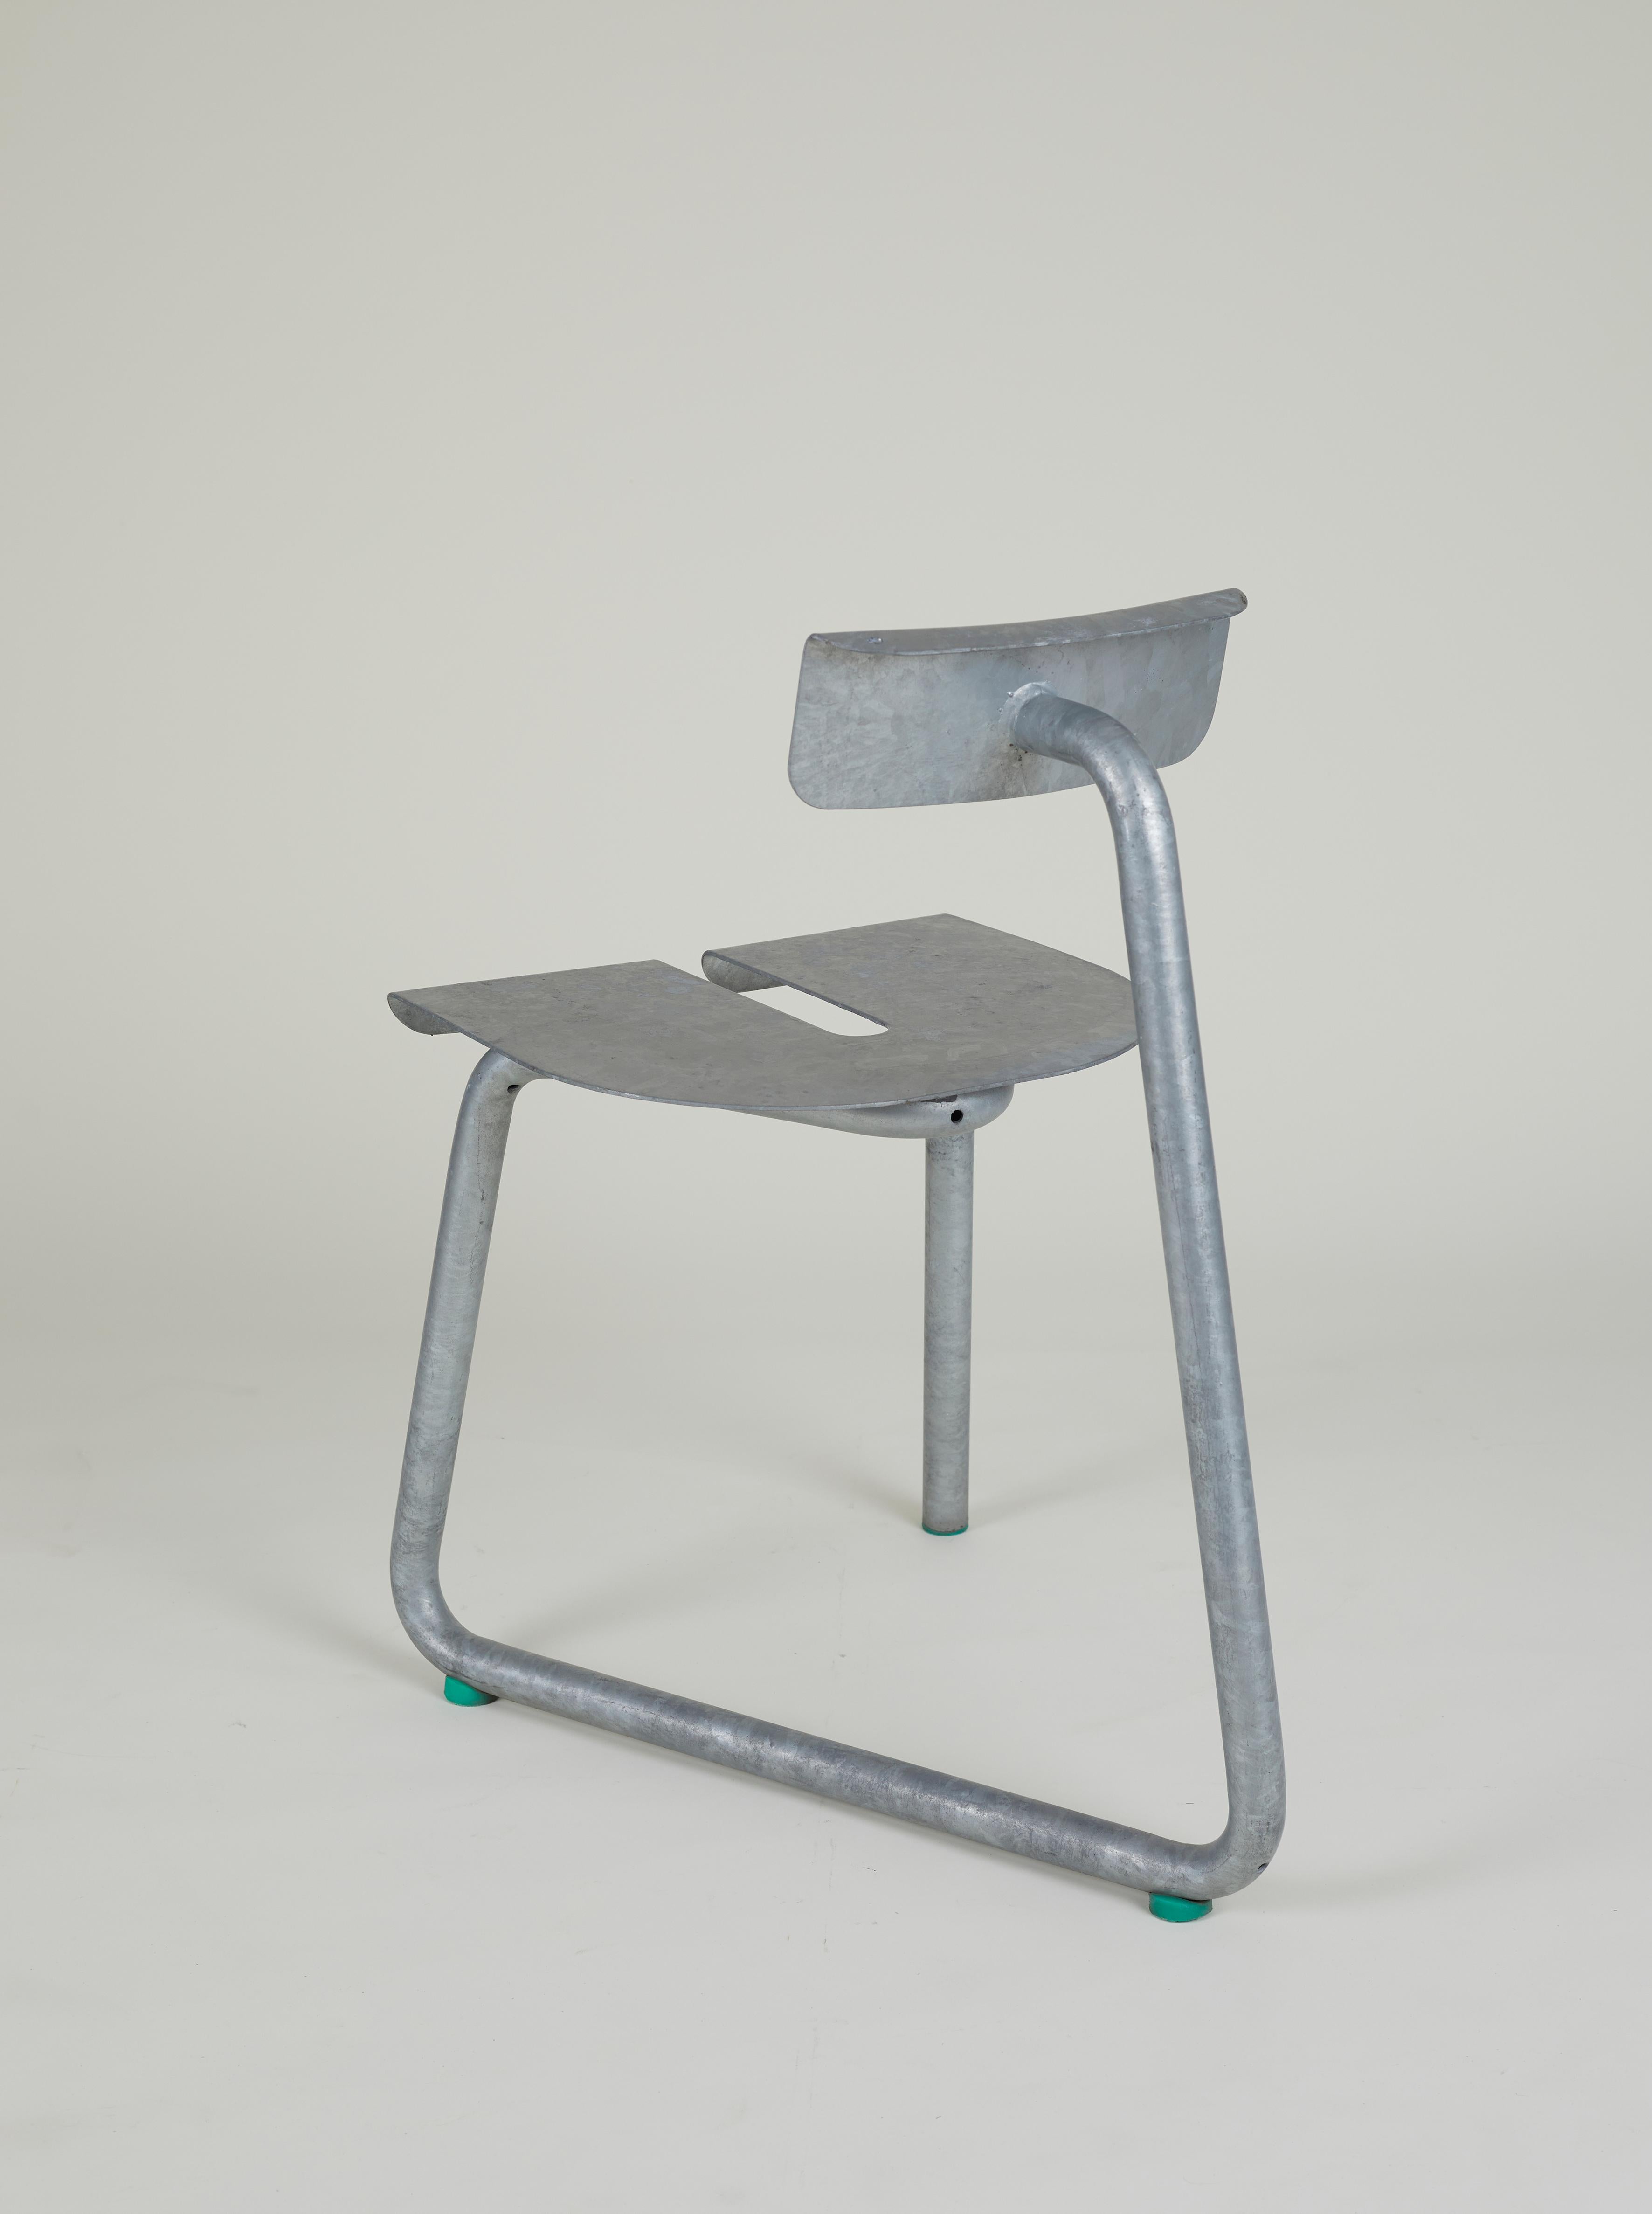 Stühle aus galvanisiertem Stahl für den Außenbereich von Atelier Thomas Serruys
Hergestellt in Belgien im Jahr 2022.

Stahlstuhl aus einem Formrohr mit Sitz und Rückenlehne aus Stahlblech. Verzinkt. Ertalon-Fußstützen.

Perfekt für den Einsatz im